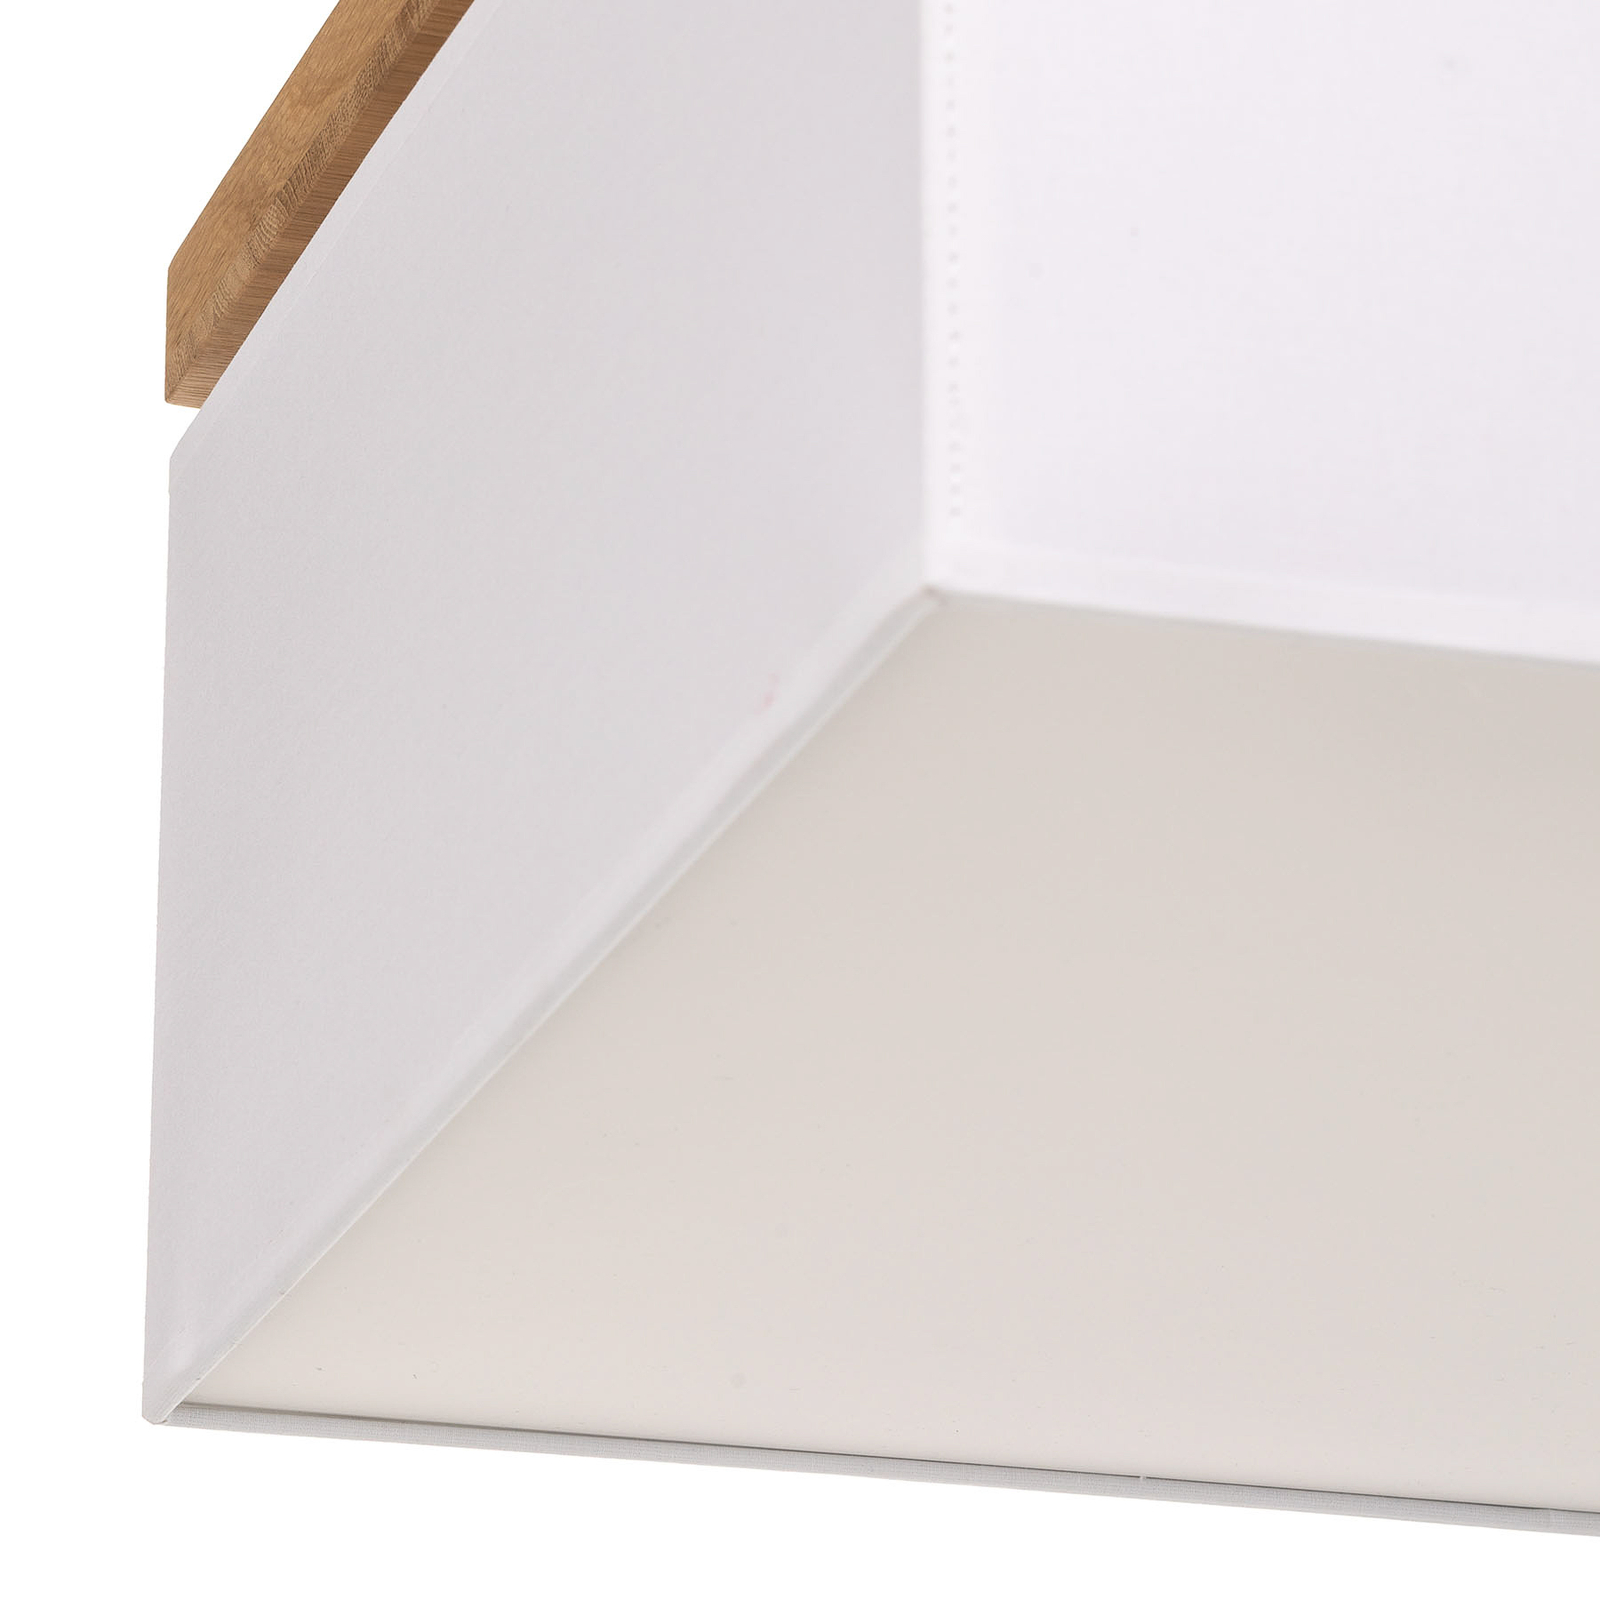 Canvas ceiling light, 45 cm x 45 cm, white